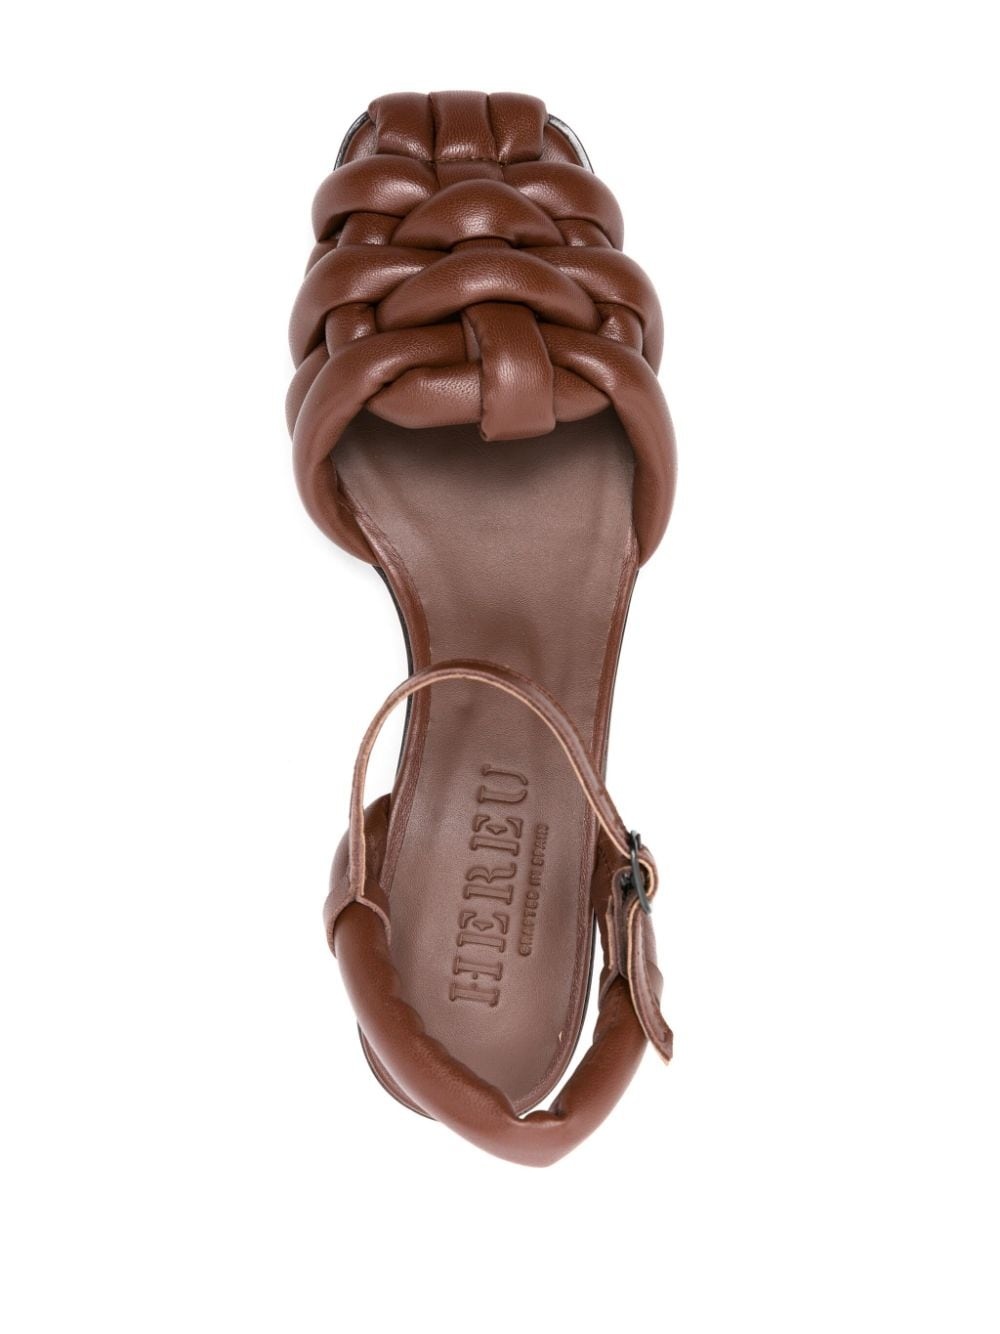 Cabresa 45mm leather sandals - 4